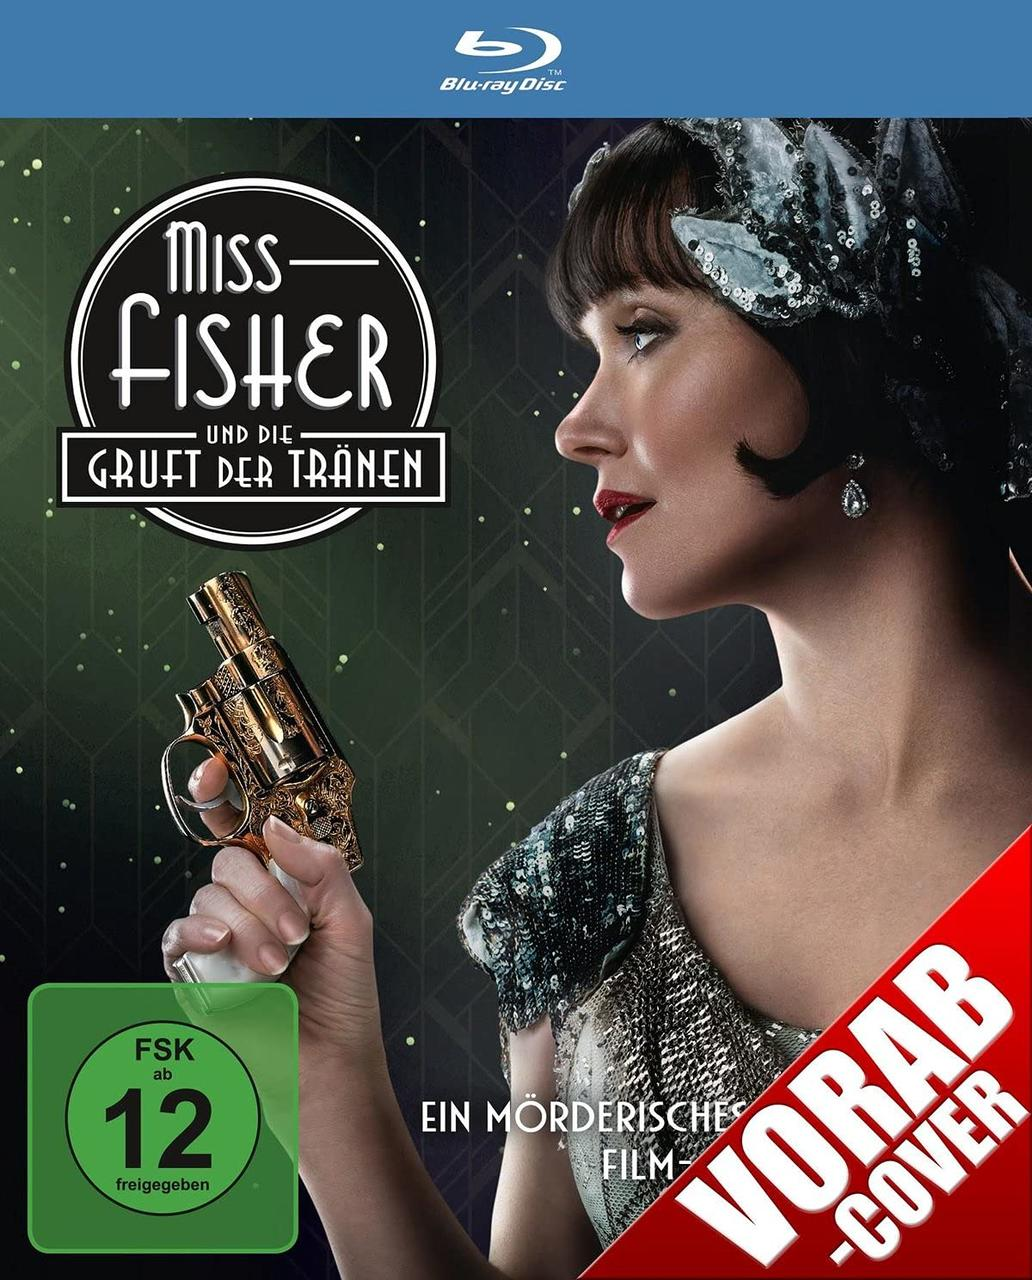 Fisher Miss Und Tränen Die Gruft Blu-ray Der